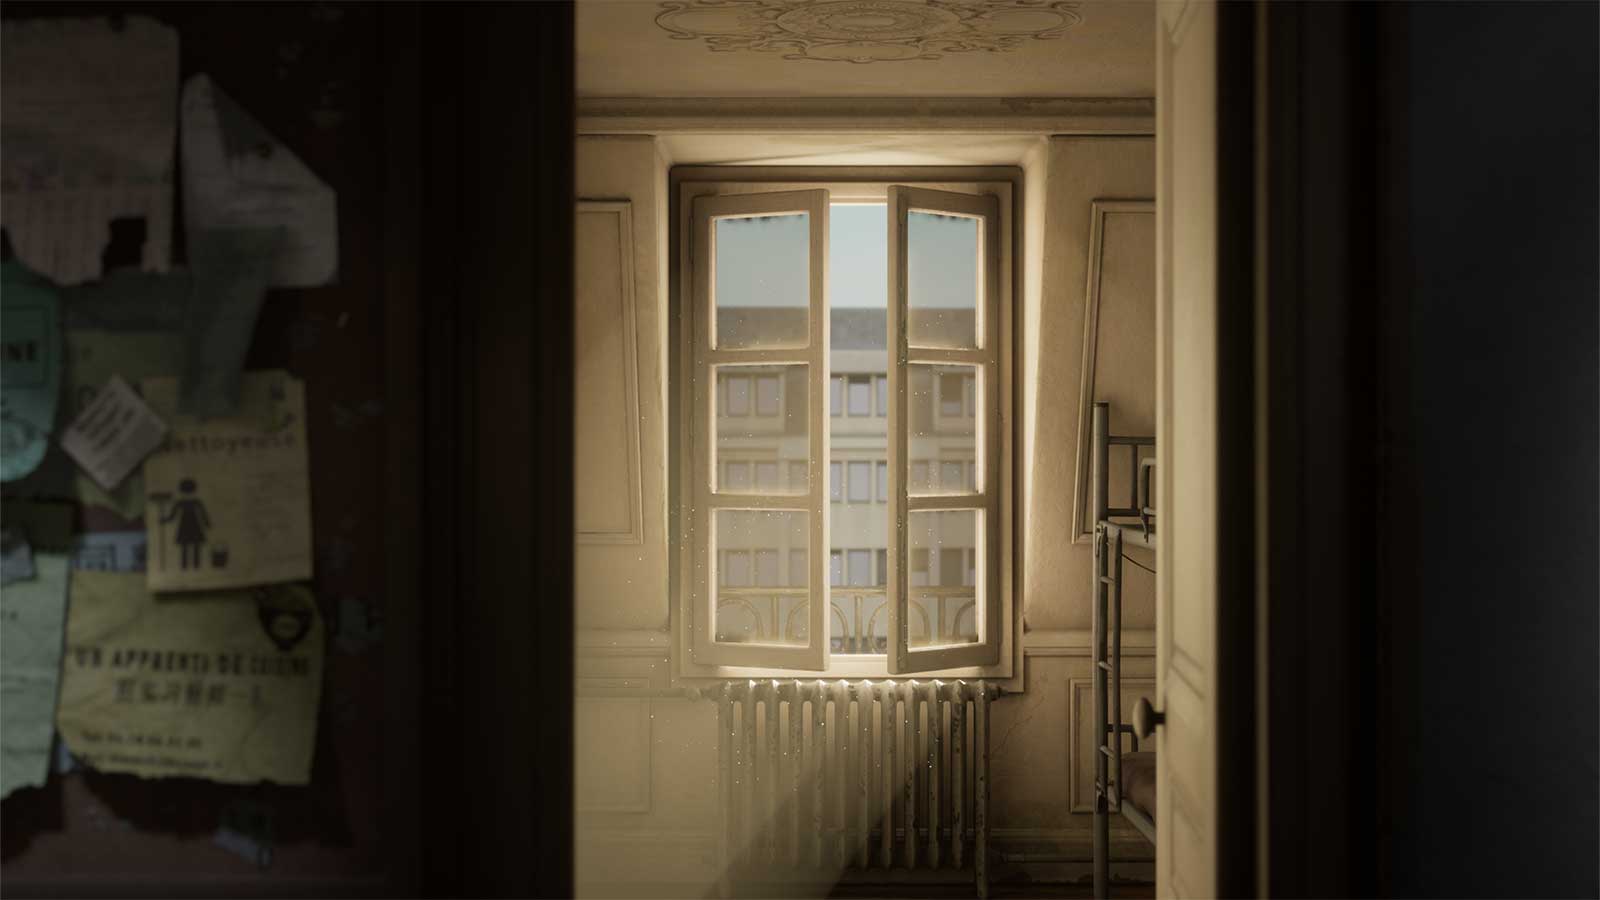 A door is wide open, showing sunlight peeking in through an open window.